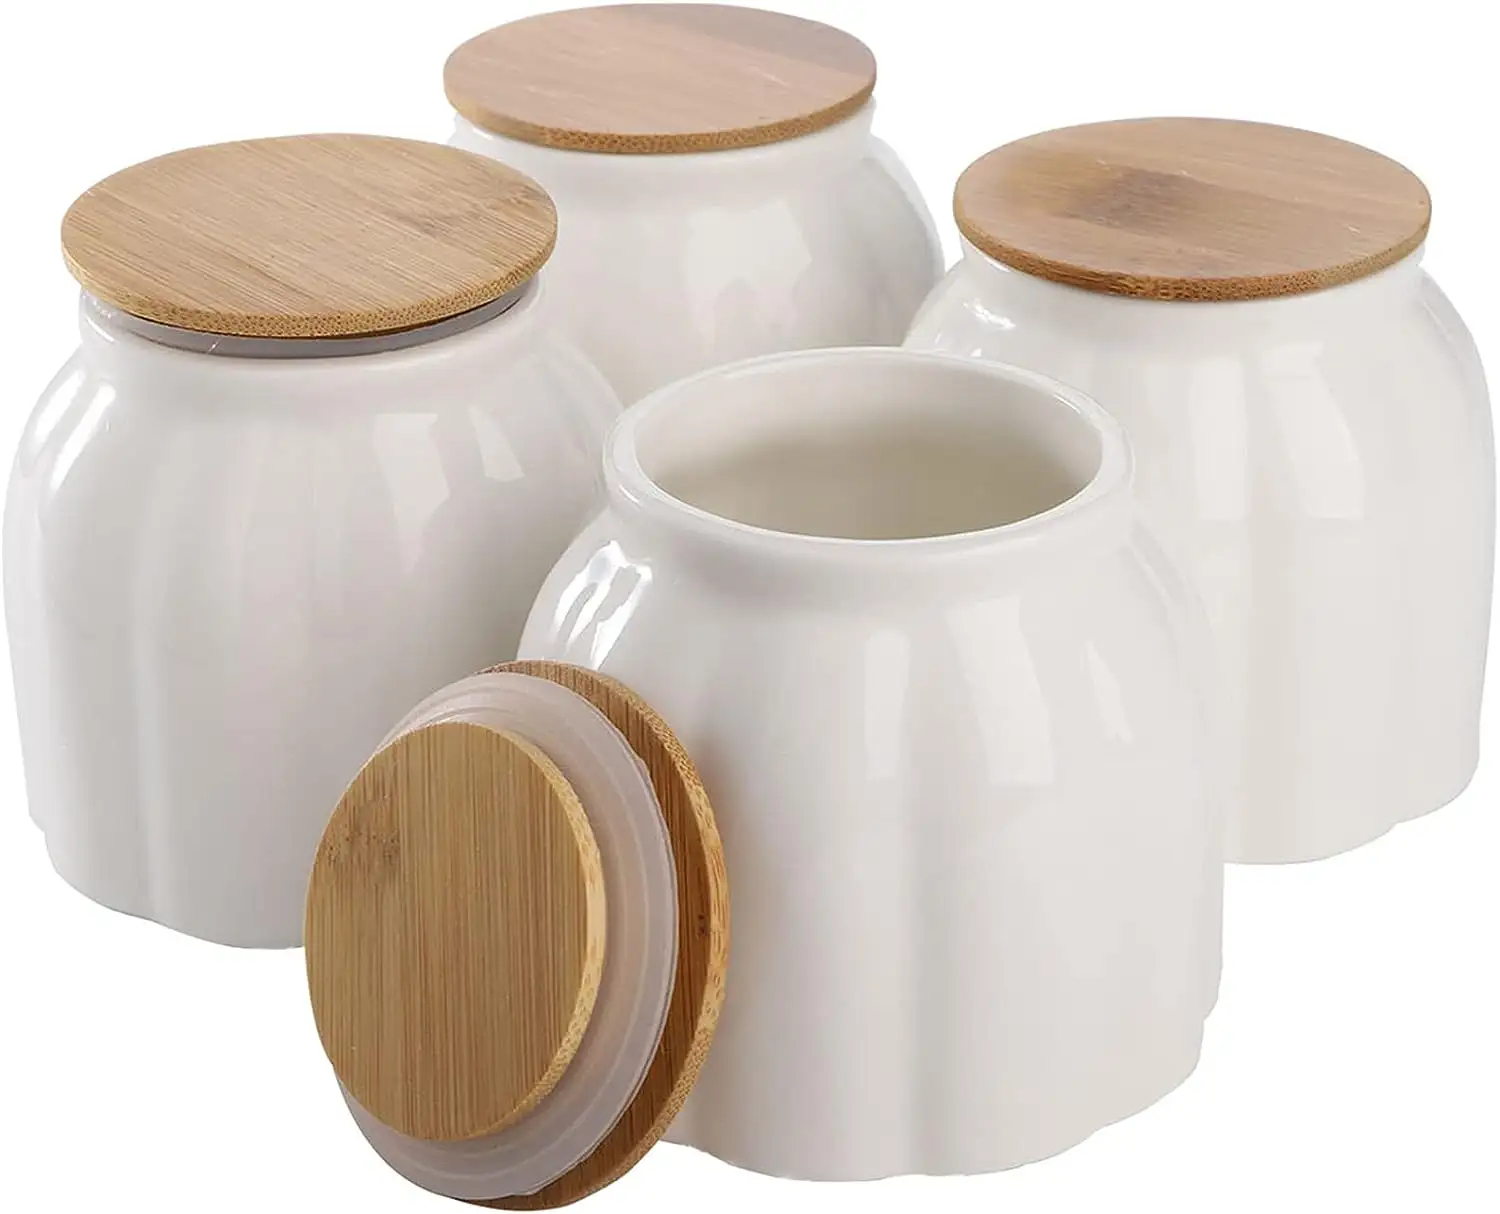 Керамическая банка для хранения продуктов, фарфоровая кухонная канистра на 9,5 унций с Воздухонепроницаемой бамбуковой крышкой, белые керамические контейнеры для кофе